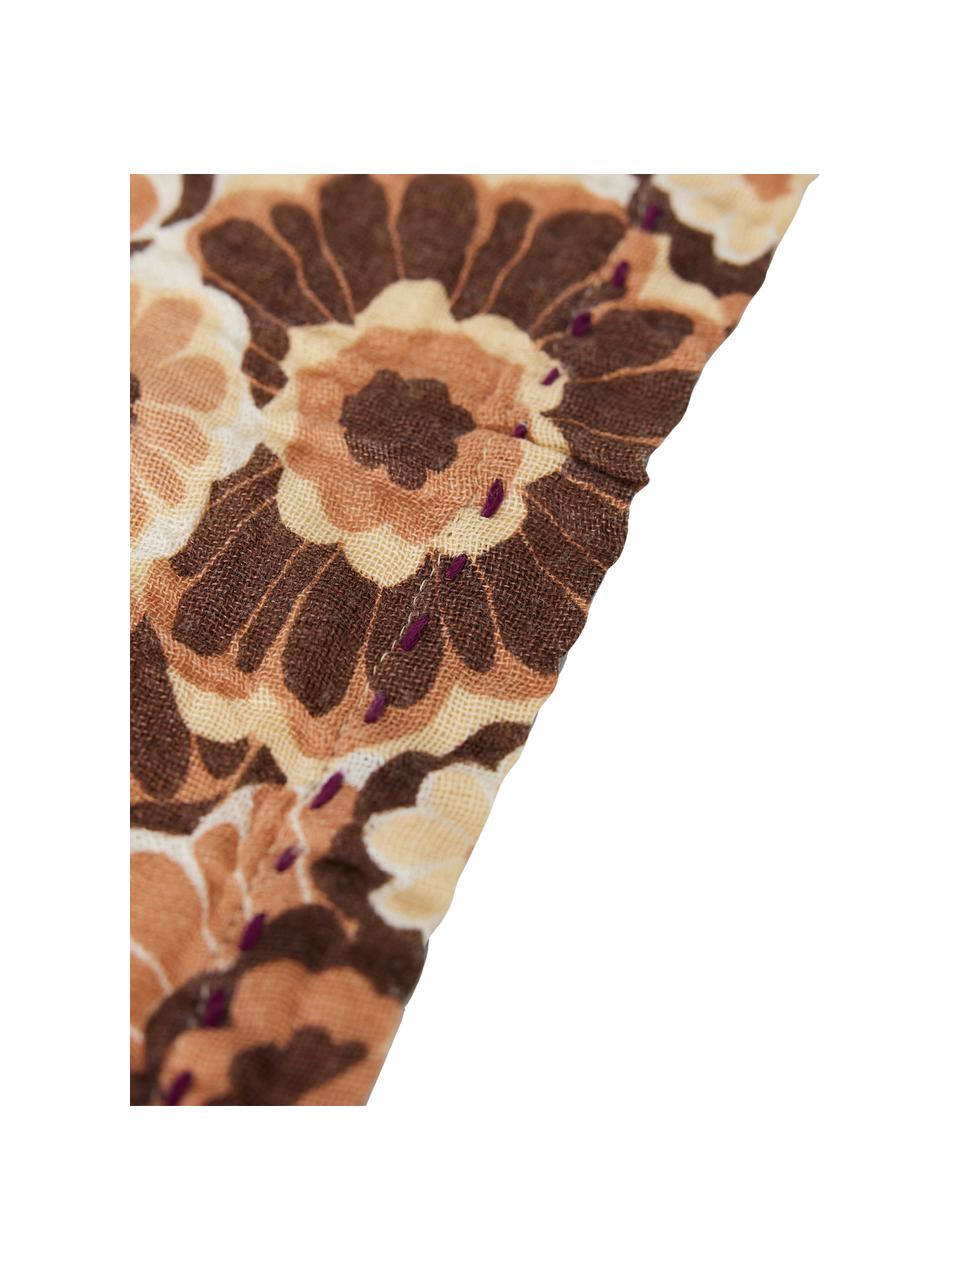 Servietten Floral, 2 Stück, 100 % Baumwolle, Braun, Orangetöne, Weiß, B 30 x L 30 cm